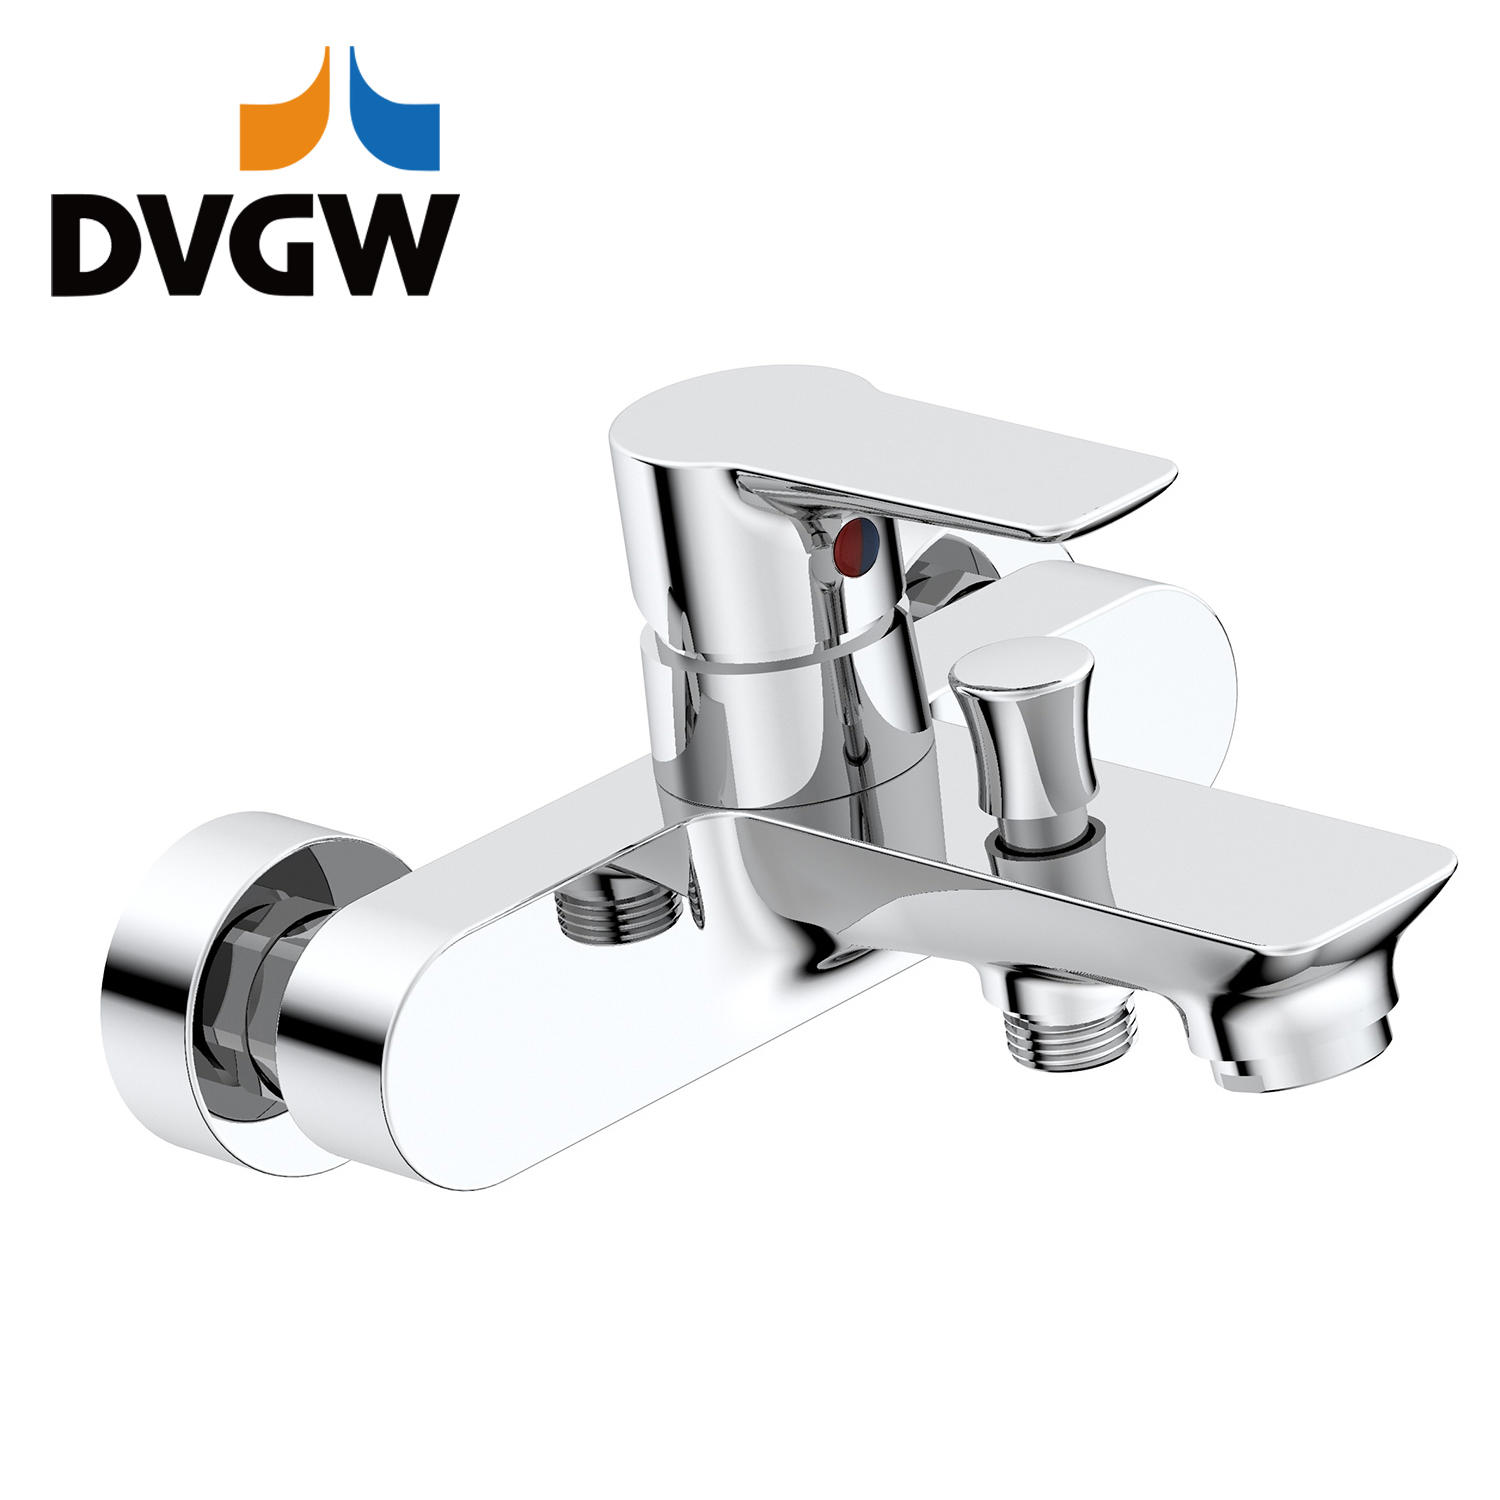 3187-10 Certificato DVGW, rubinetto in ottone miscelatore monocomando a parete per vasca acqua calda/fredda